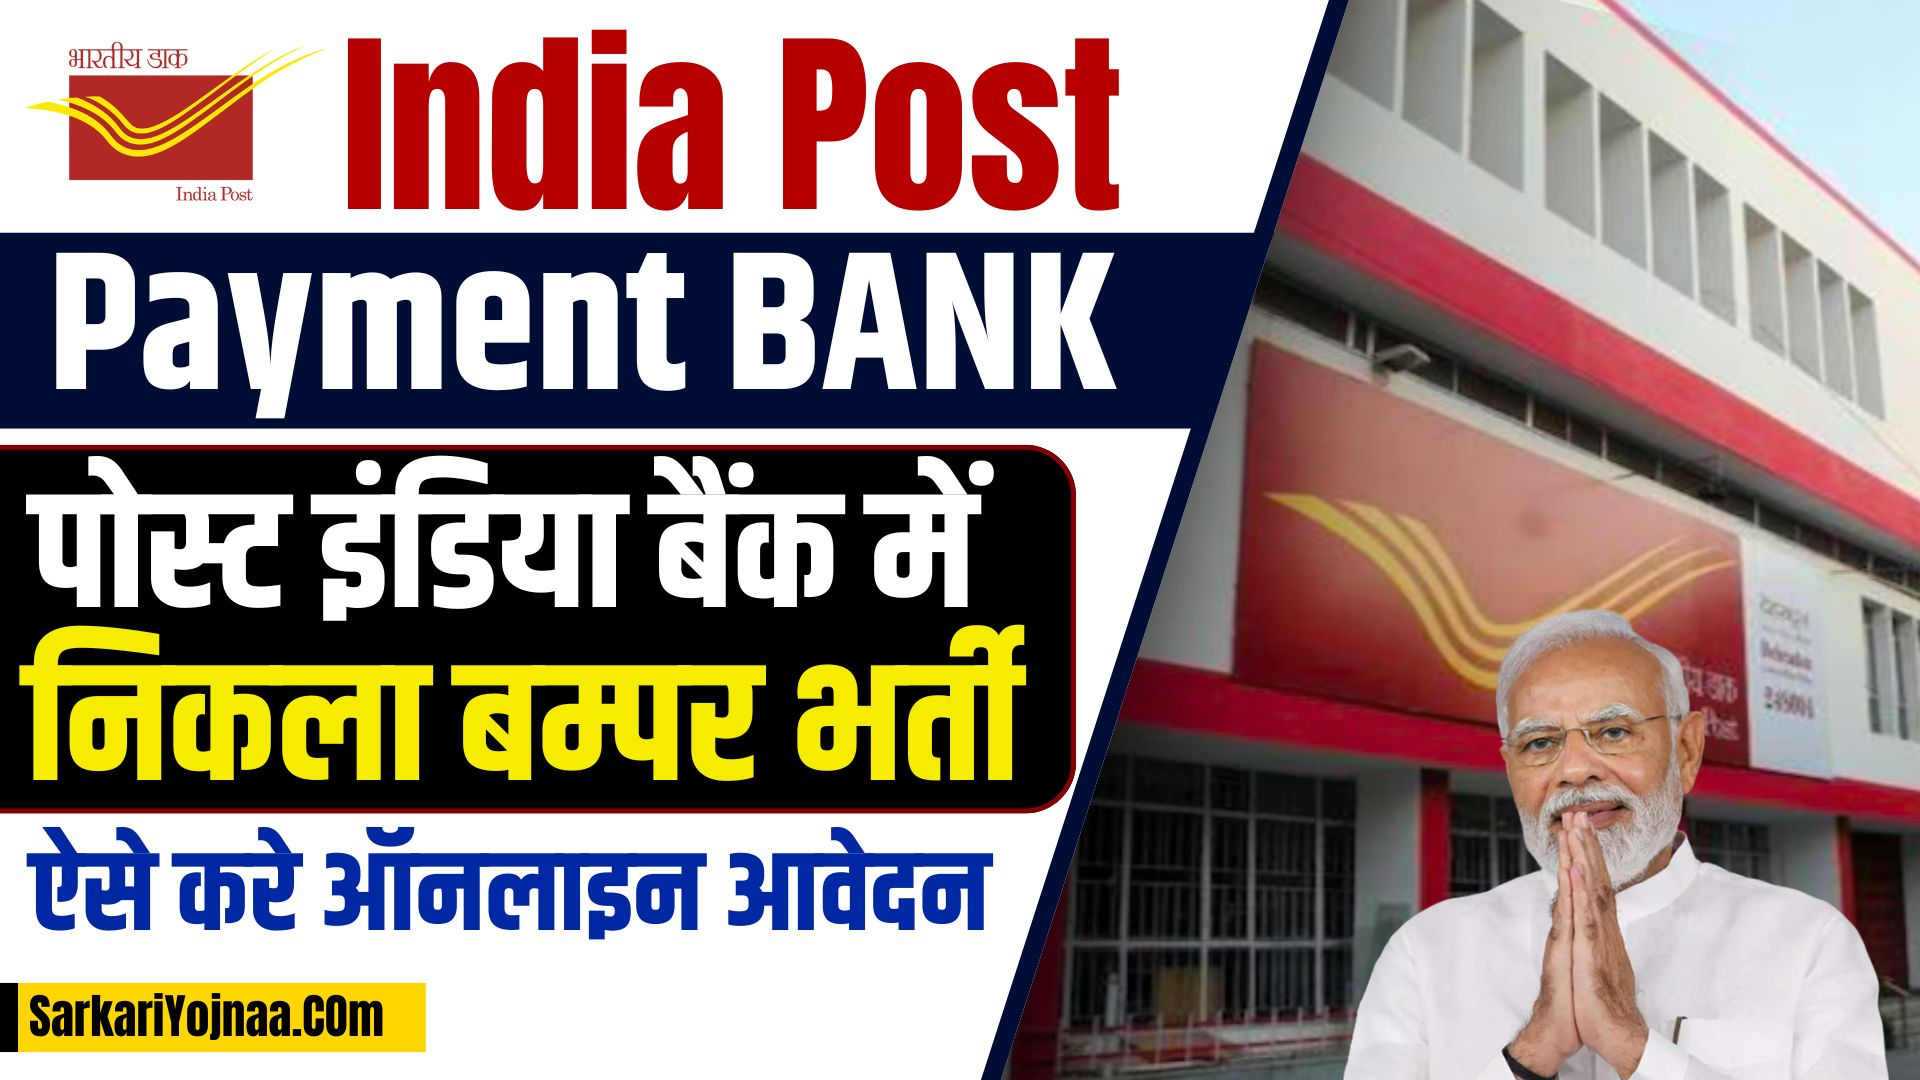 India Post Payment Bank Supervisor Vacancy: इंडिया पोस्ट पेमेंट बैंक में निकली नई भर्ती, ऐसे करें आवेदन, जानें पूरा प्रोसेस